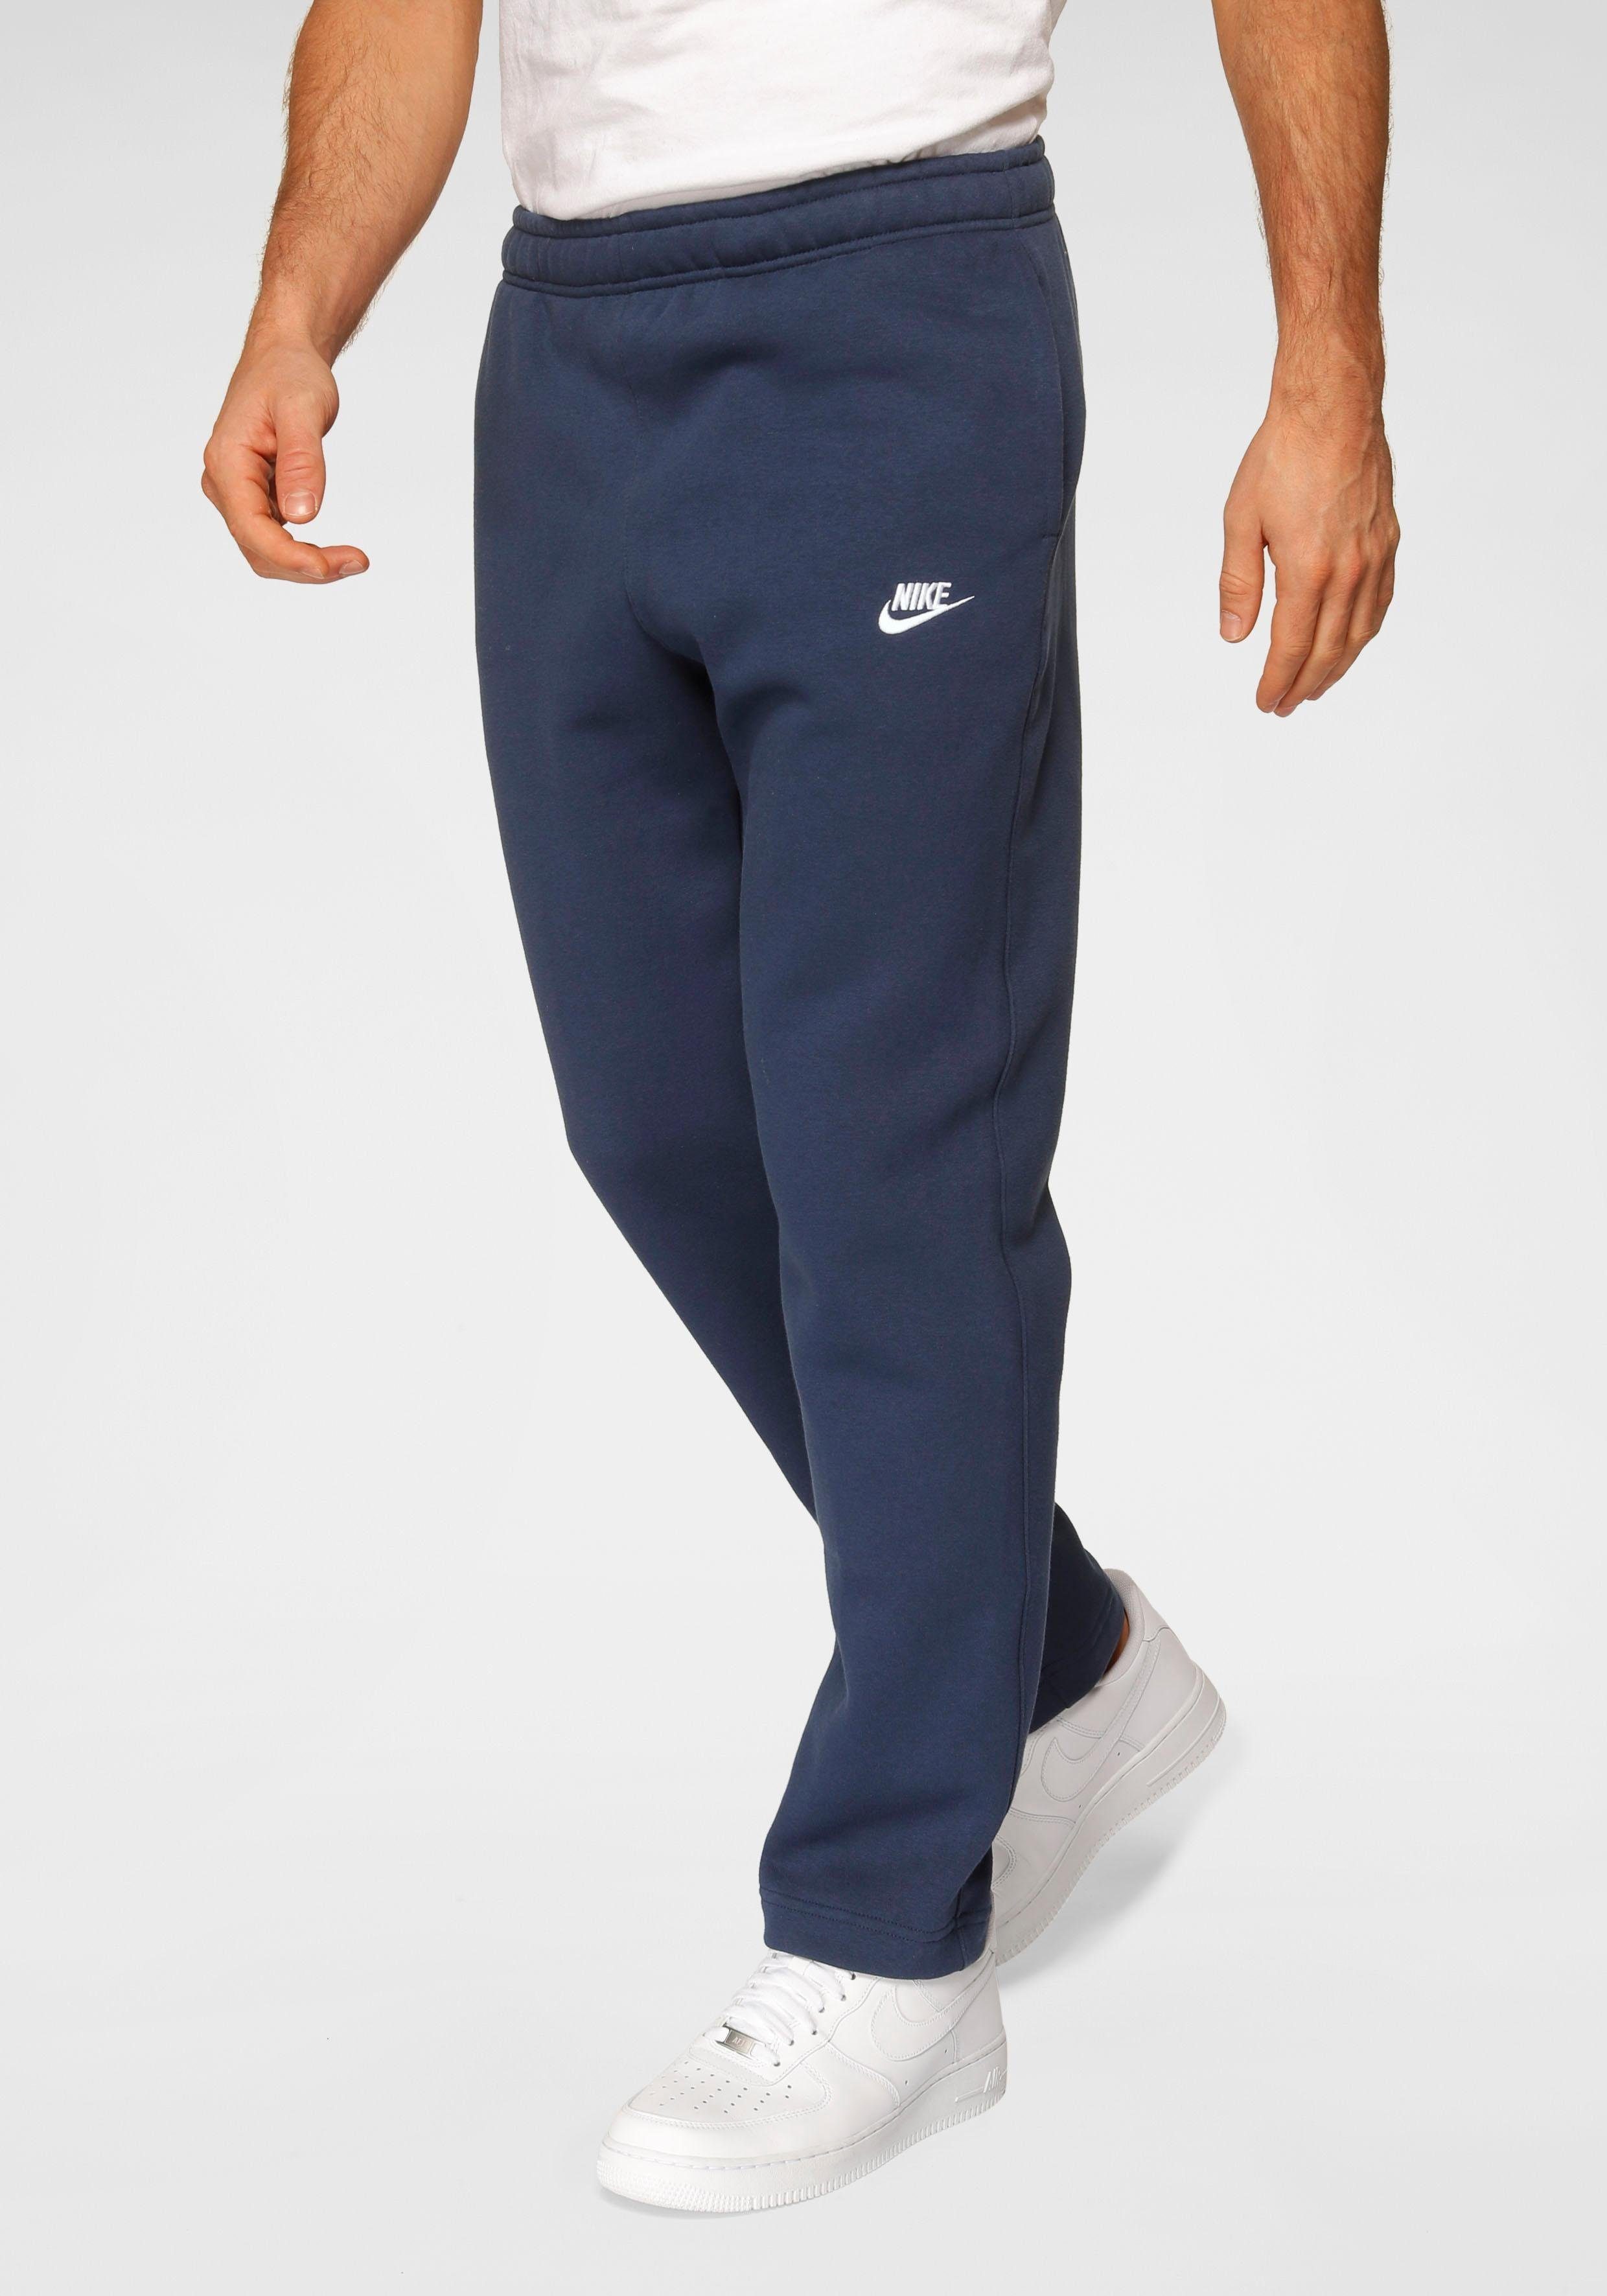 Nike Sportswear Jogginghose Club Fleece Men's Pants marine